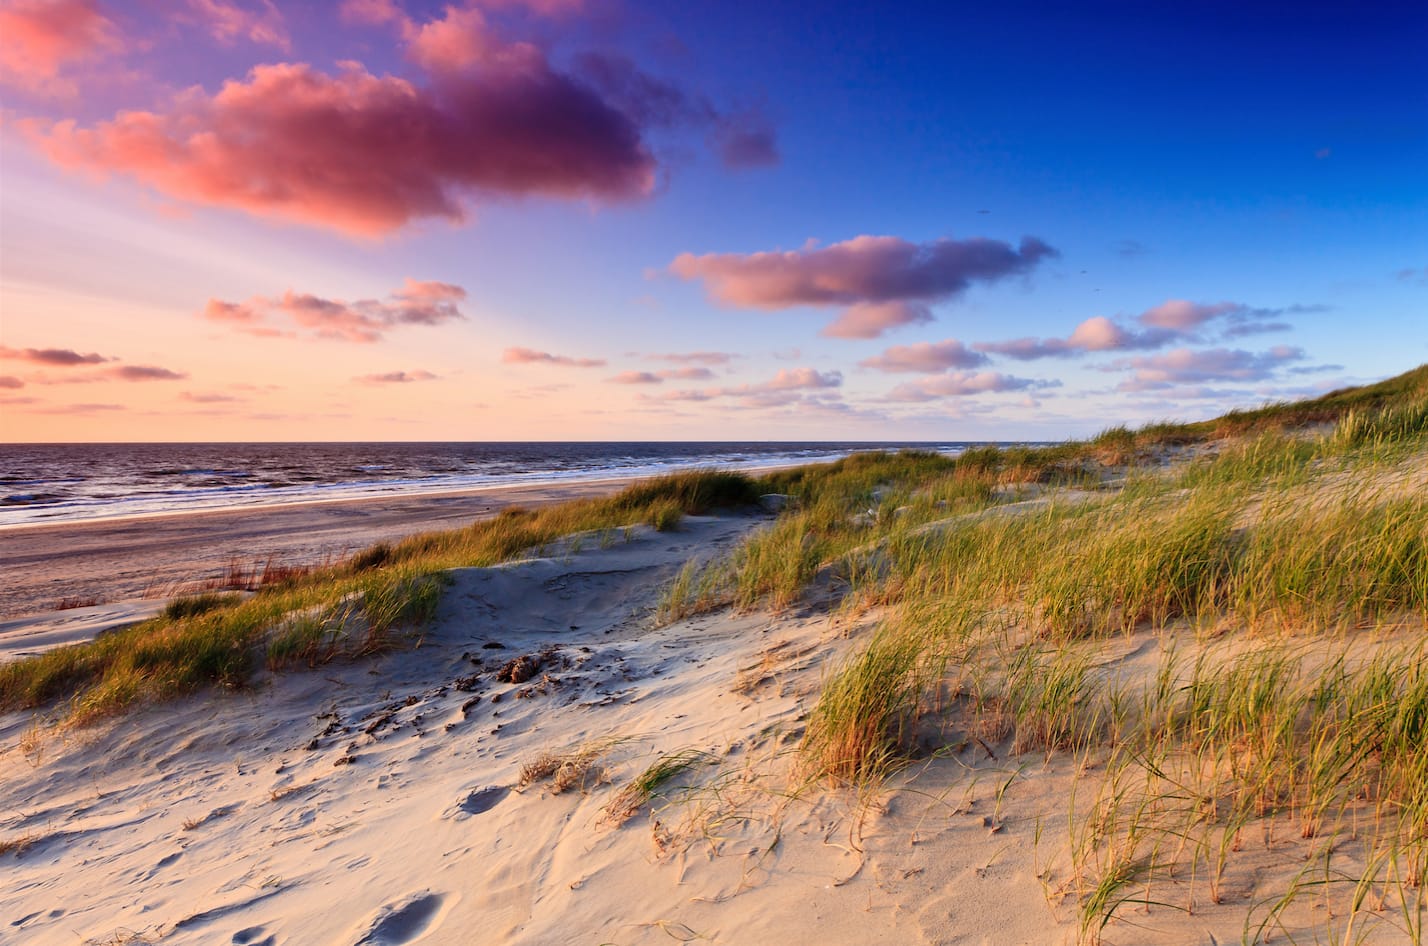 foto van zandduinen in het Westland begroeid met groen helmgras en in de achtergrond de zee met wolken en een rode gloed van de zon